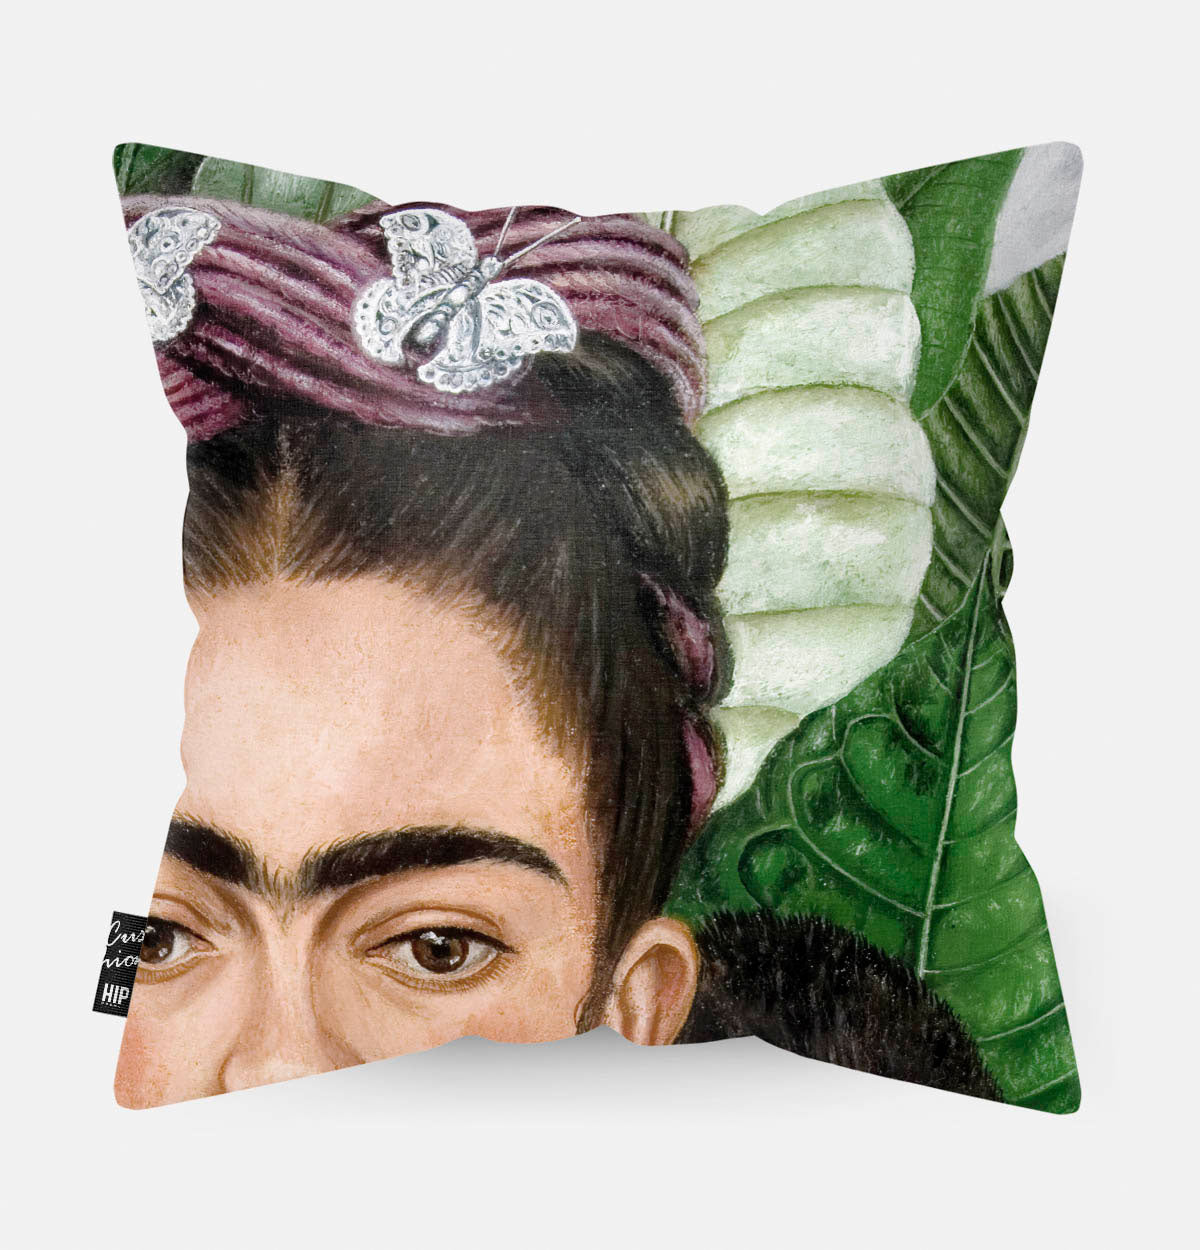 Kussen met schilderij van Frida zelfportret met doornen halsband en kolibrie erop afgebeeld in detail.